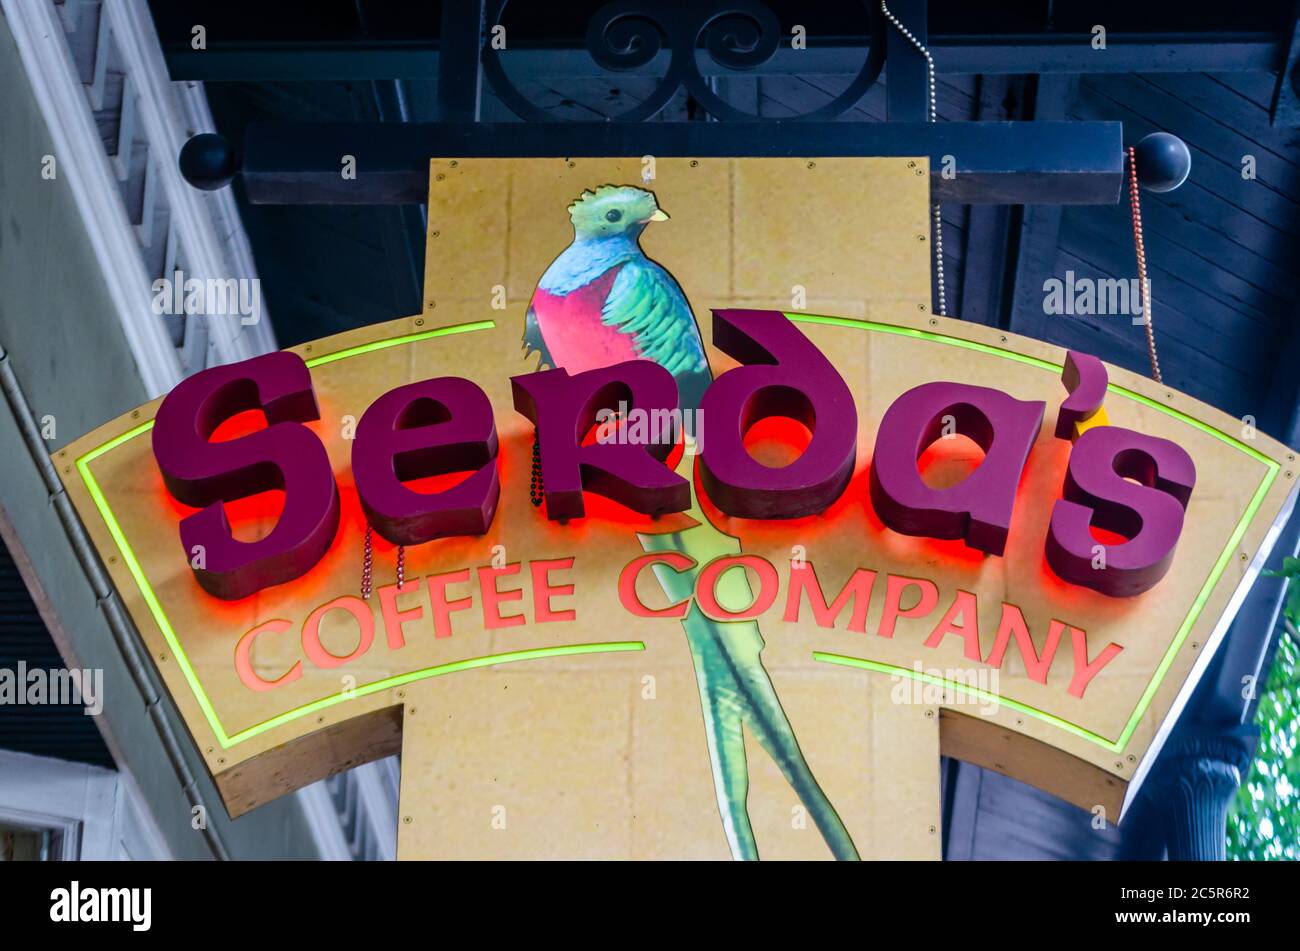 L’enseigne de Serda’s Coffee Company est illustrée, le 3 juillet 2020, à Mobile, Alabama. Le logo présente l'oiseau quetzal coloré. Banque D'Images